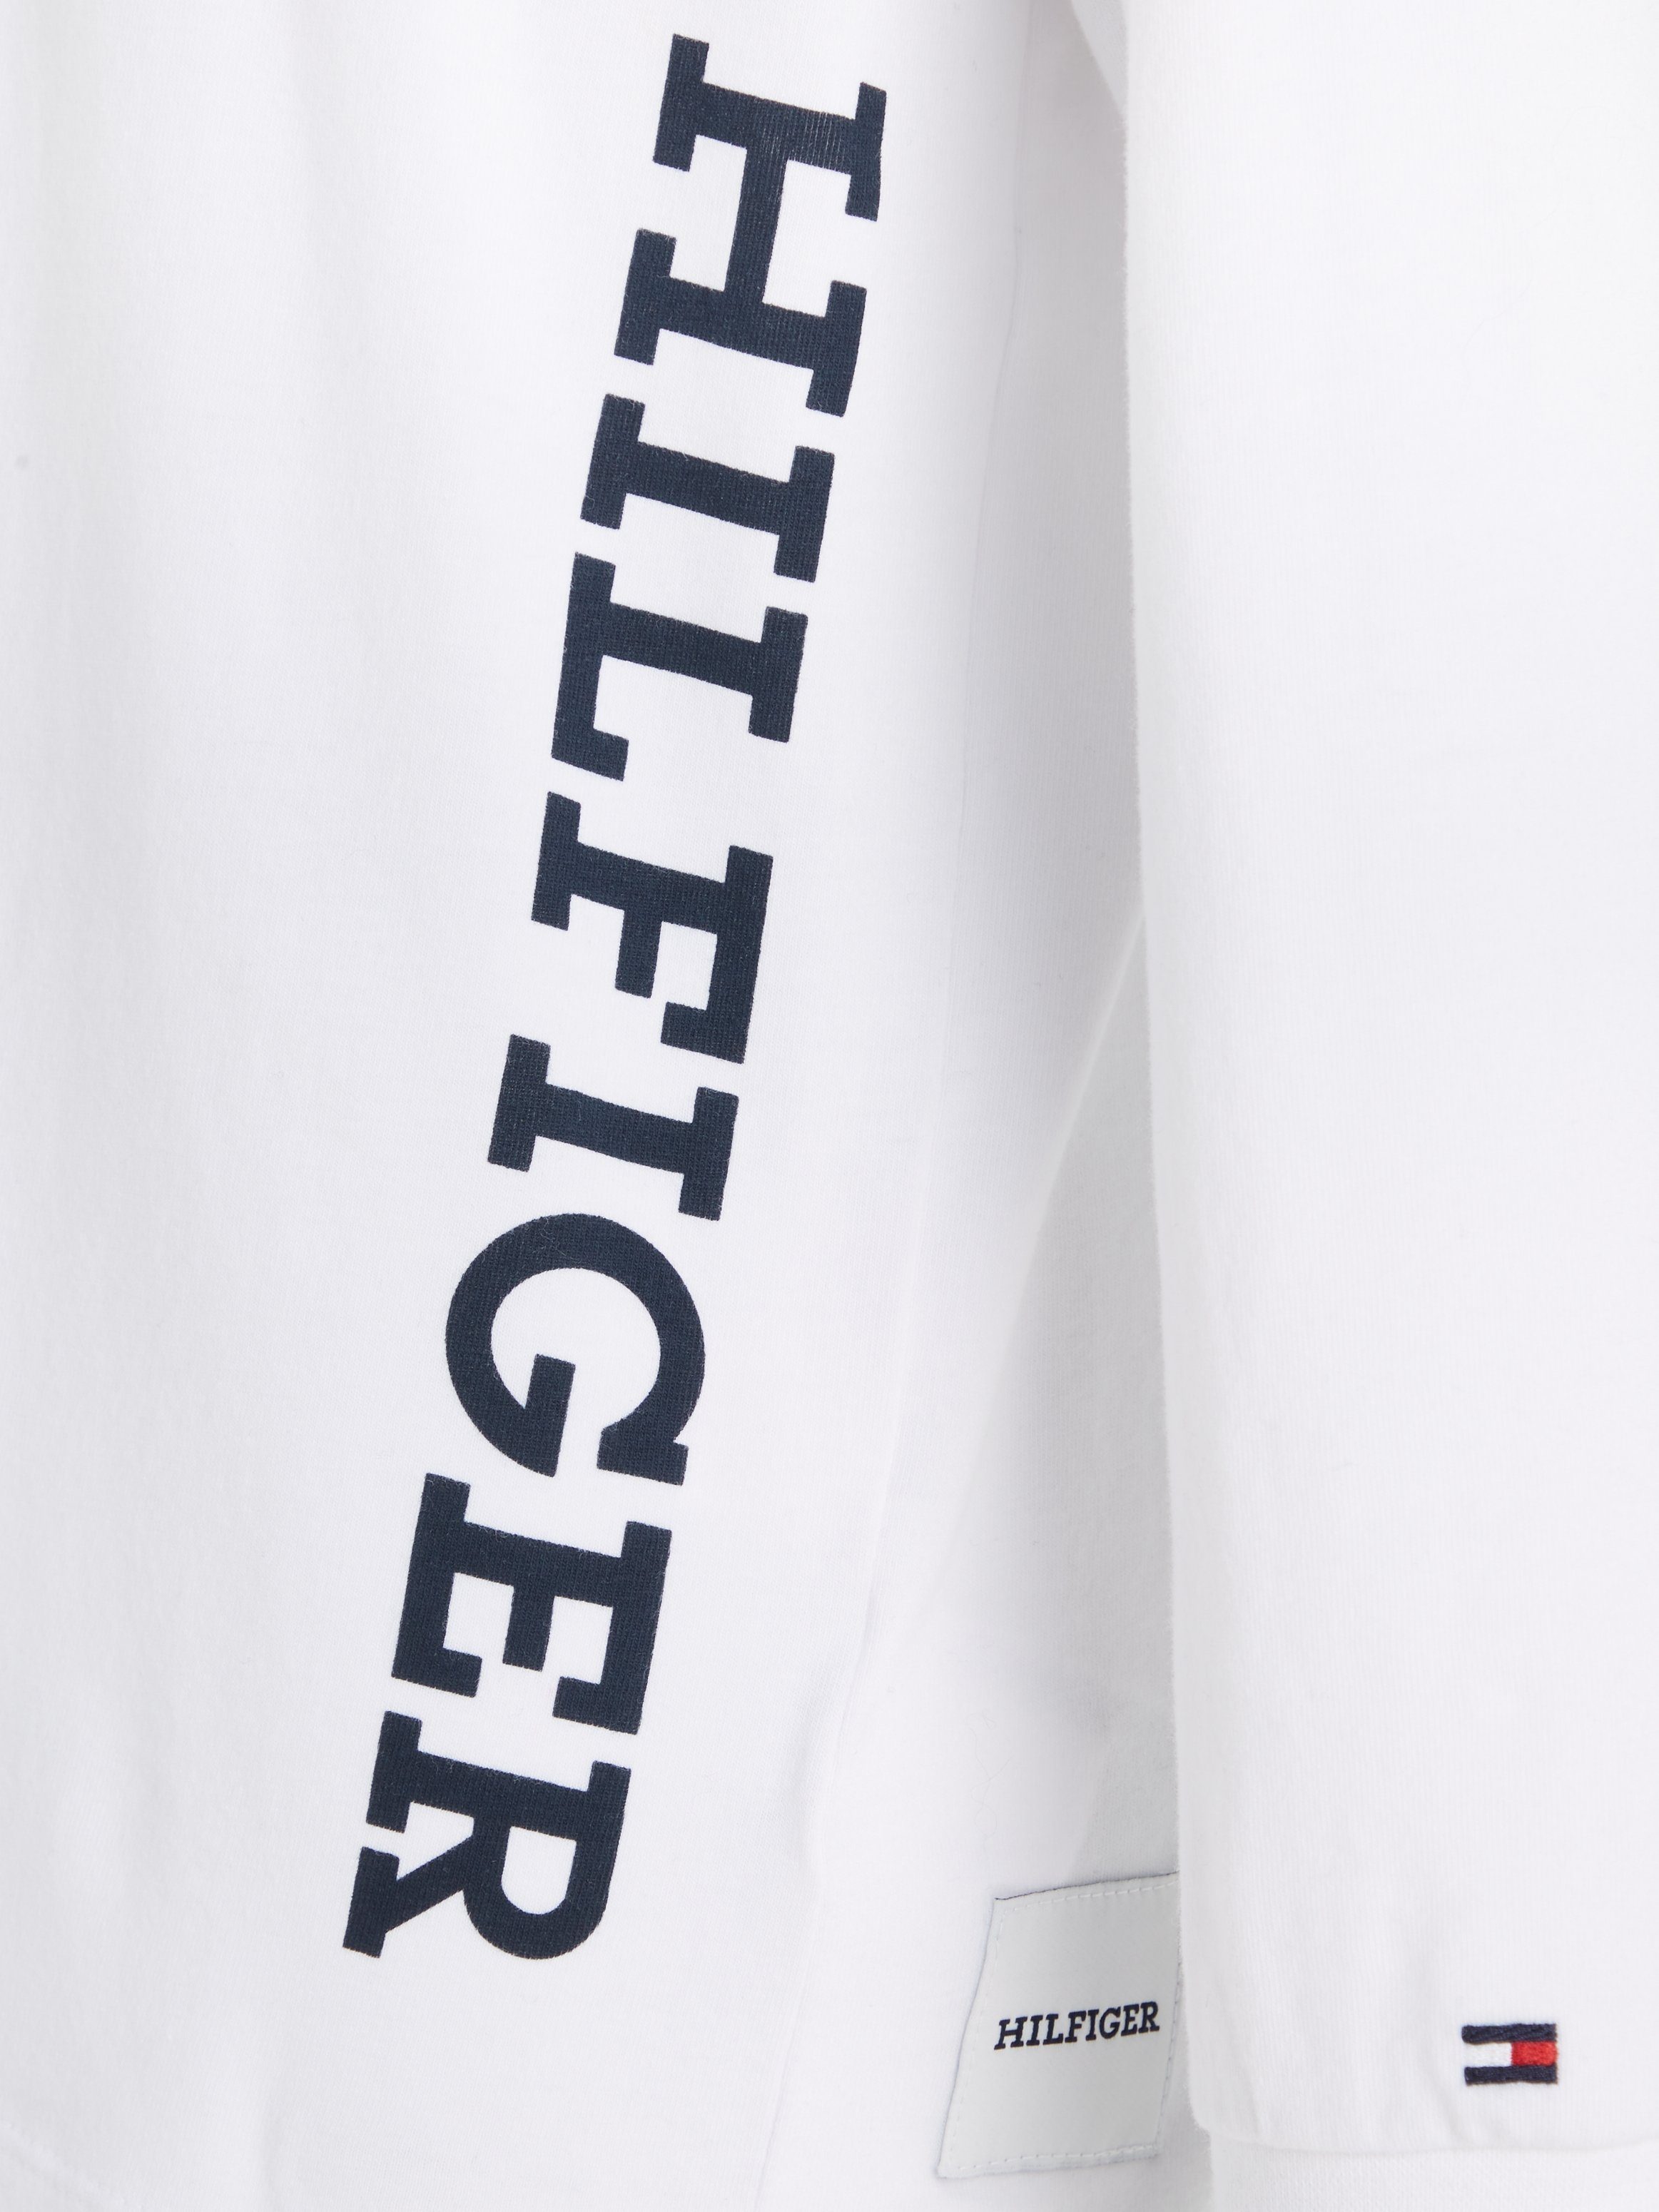 Tommy Hilfiger Langarmshirt für White MONOTYPE L/S TEE Jungen